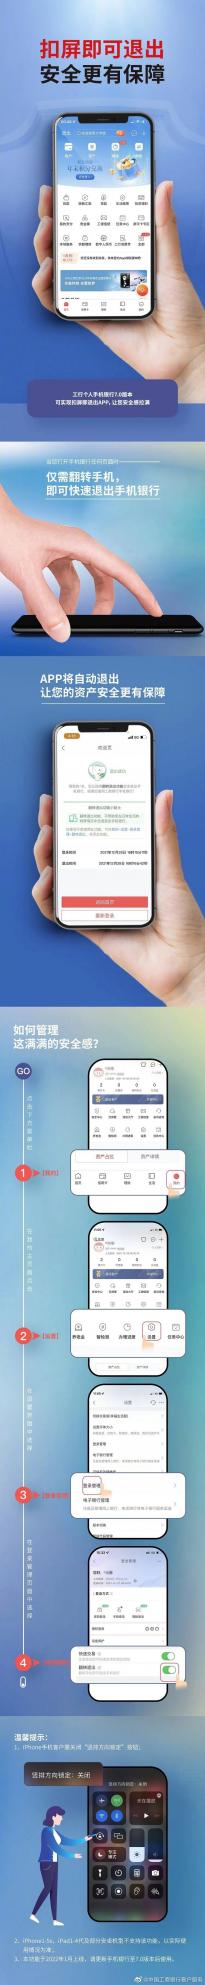 中国工商银行手机银行推出新功能：扣屏退出App 苹果iPhone 5s不支持